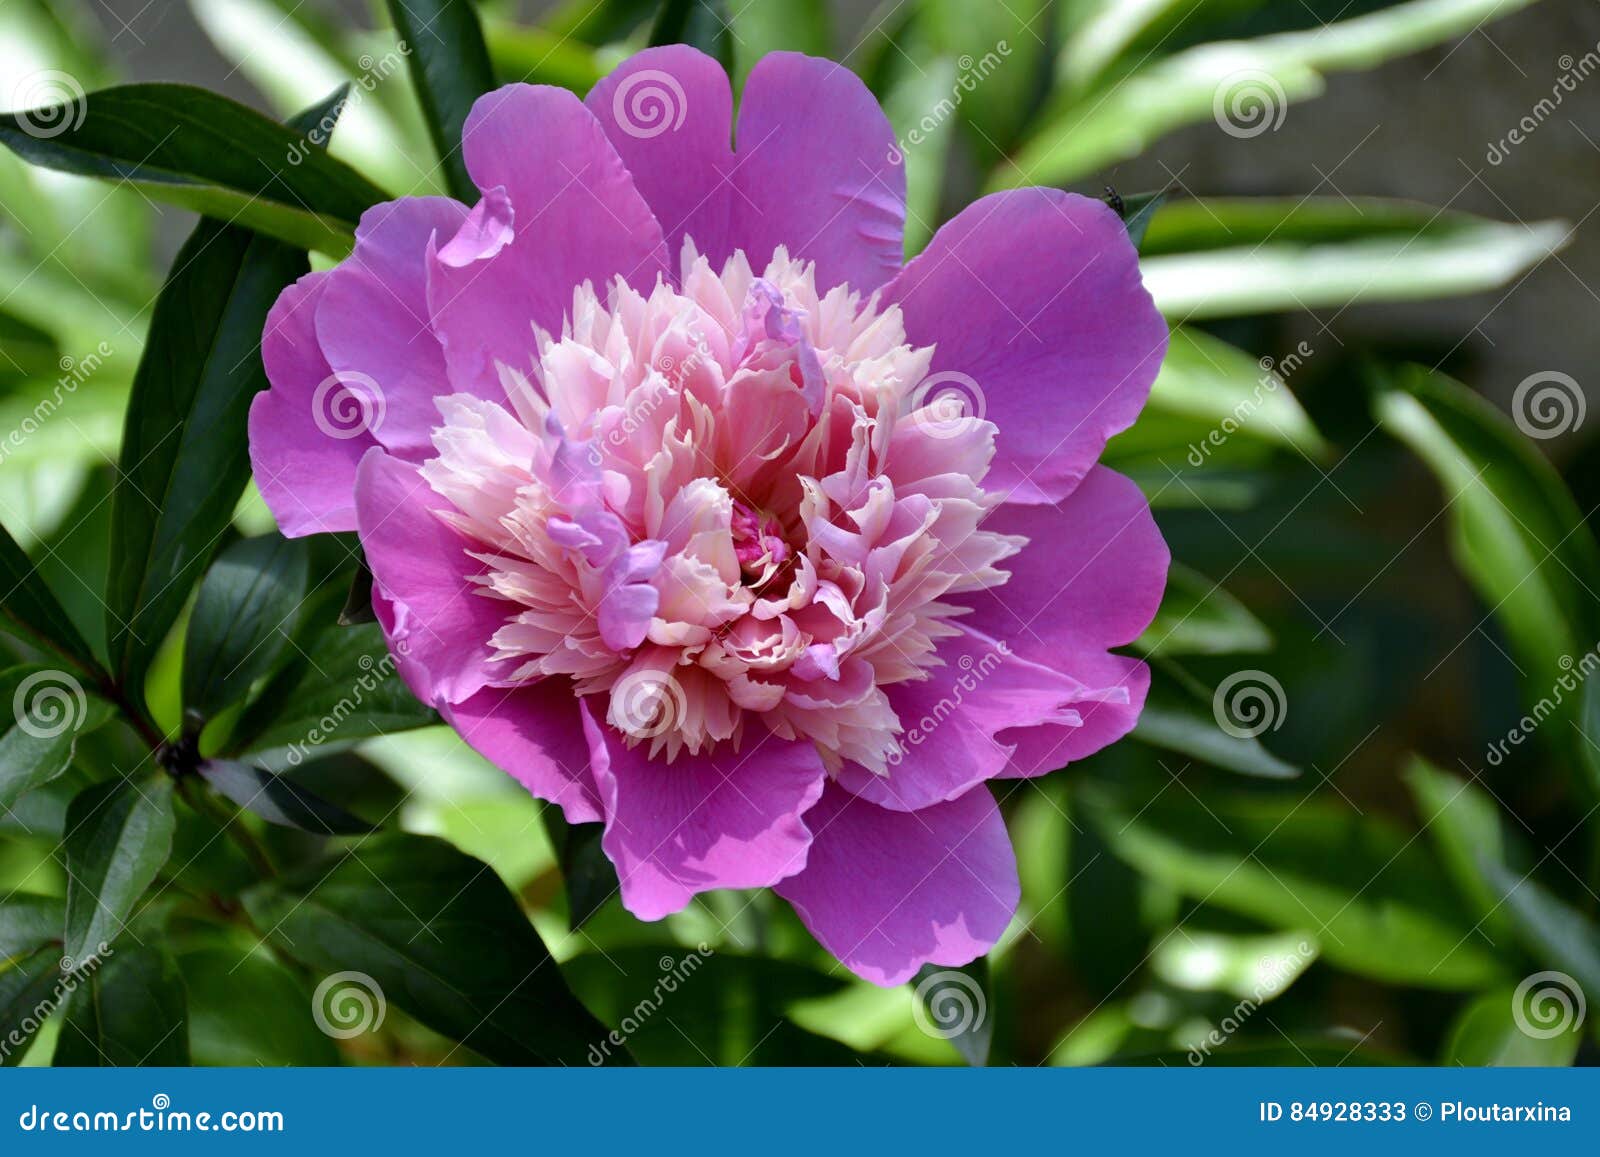 Detalles De Una Begonia Púrpura Imagen de archivo - Imagen de belleza,  detalle: 84928333